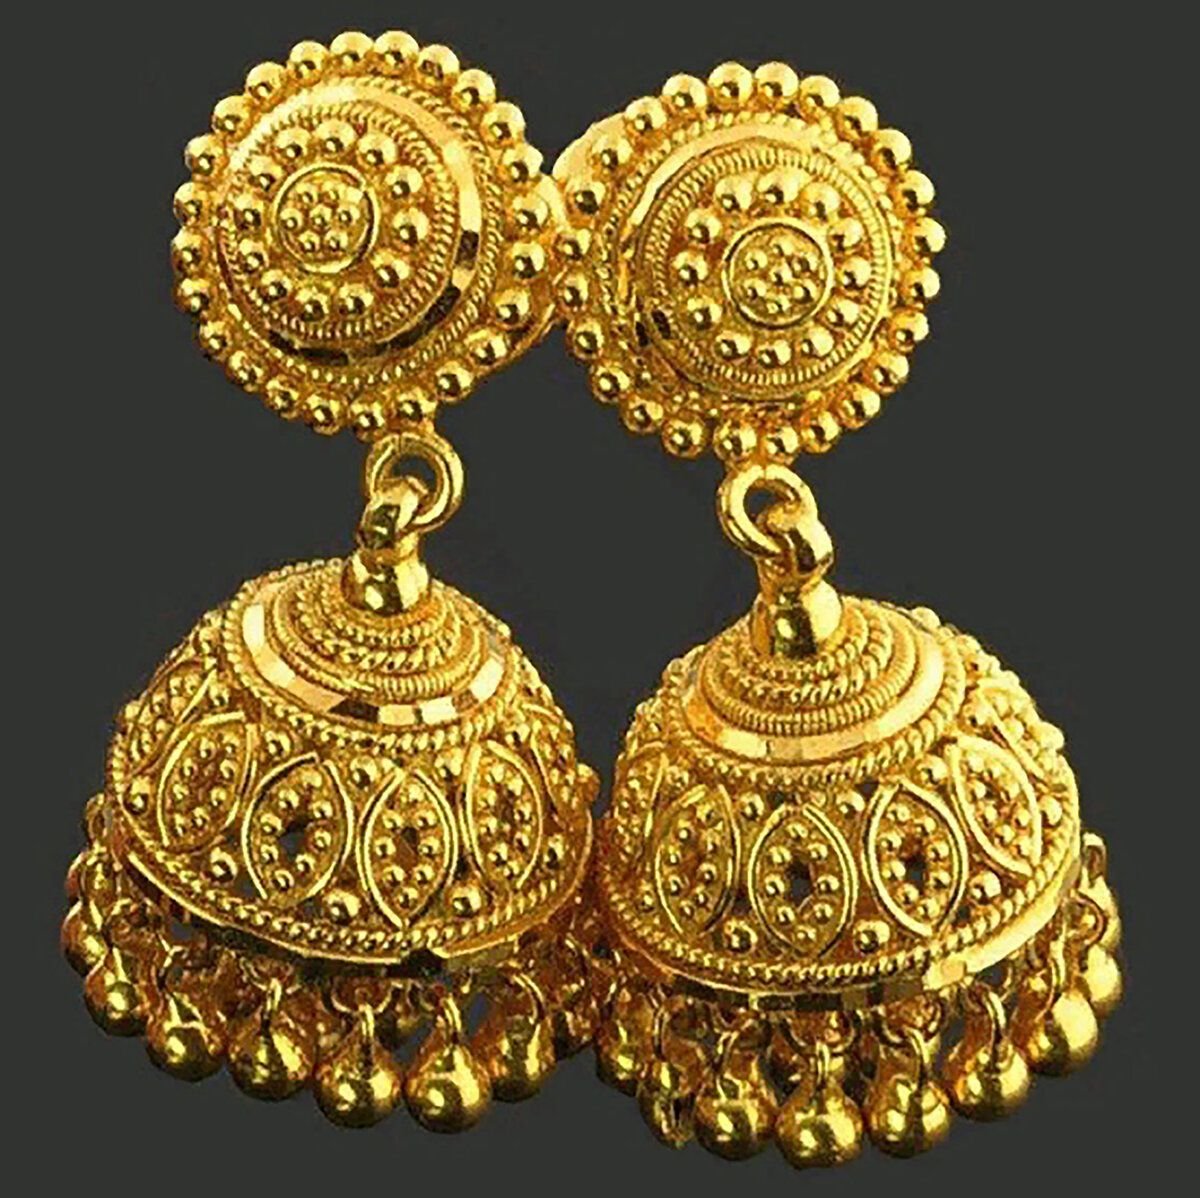 золотое украшение индий